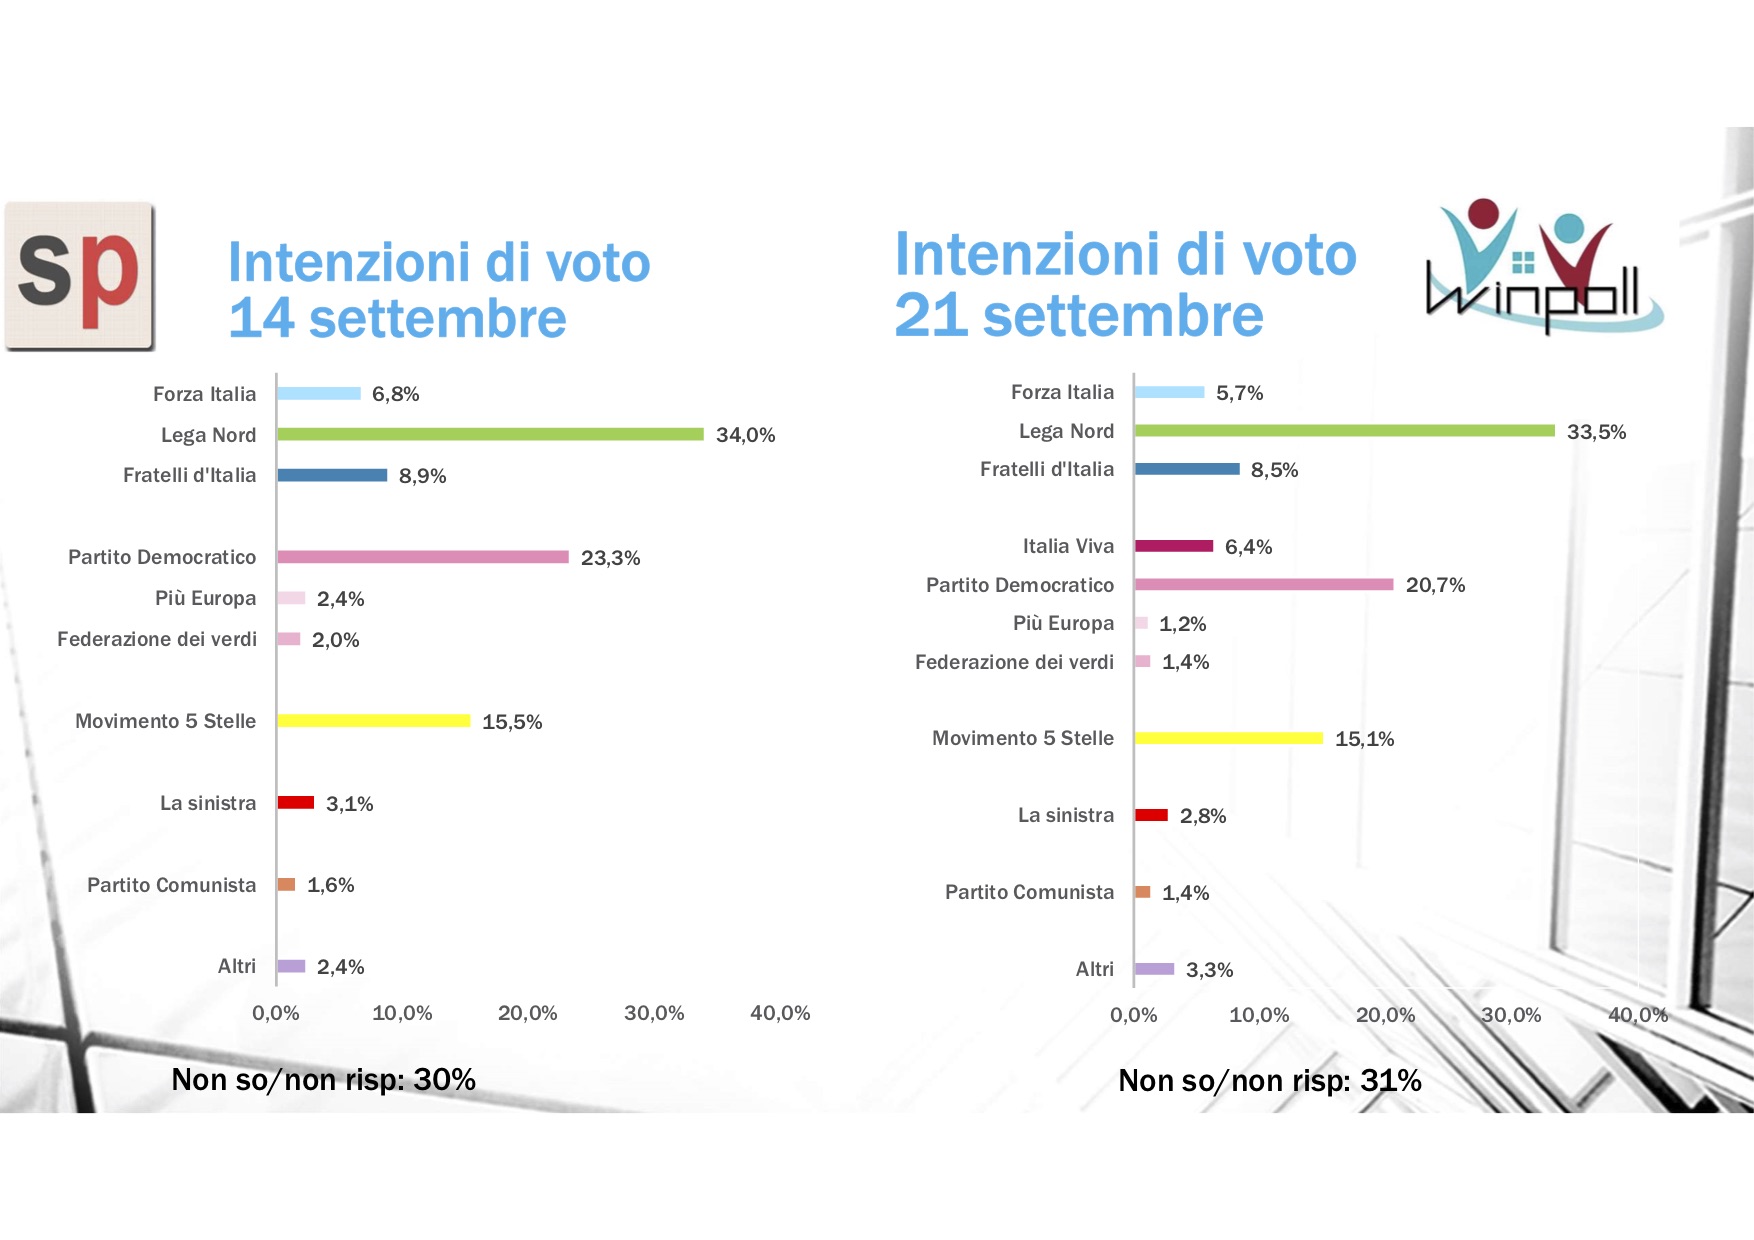 sondaggi elettorali winpoll, intenzioni voto